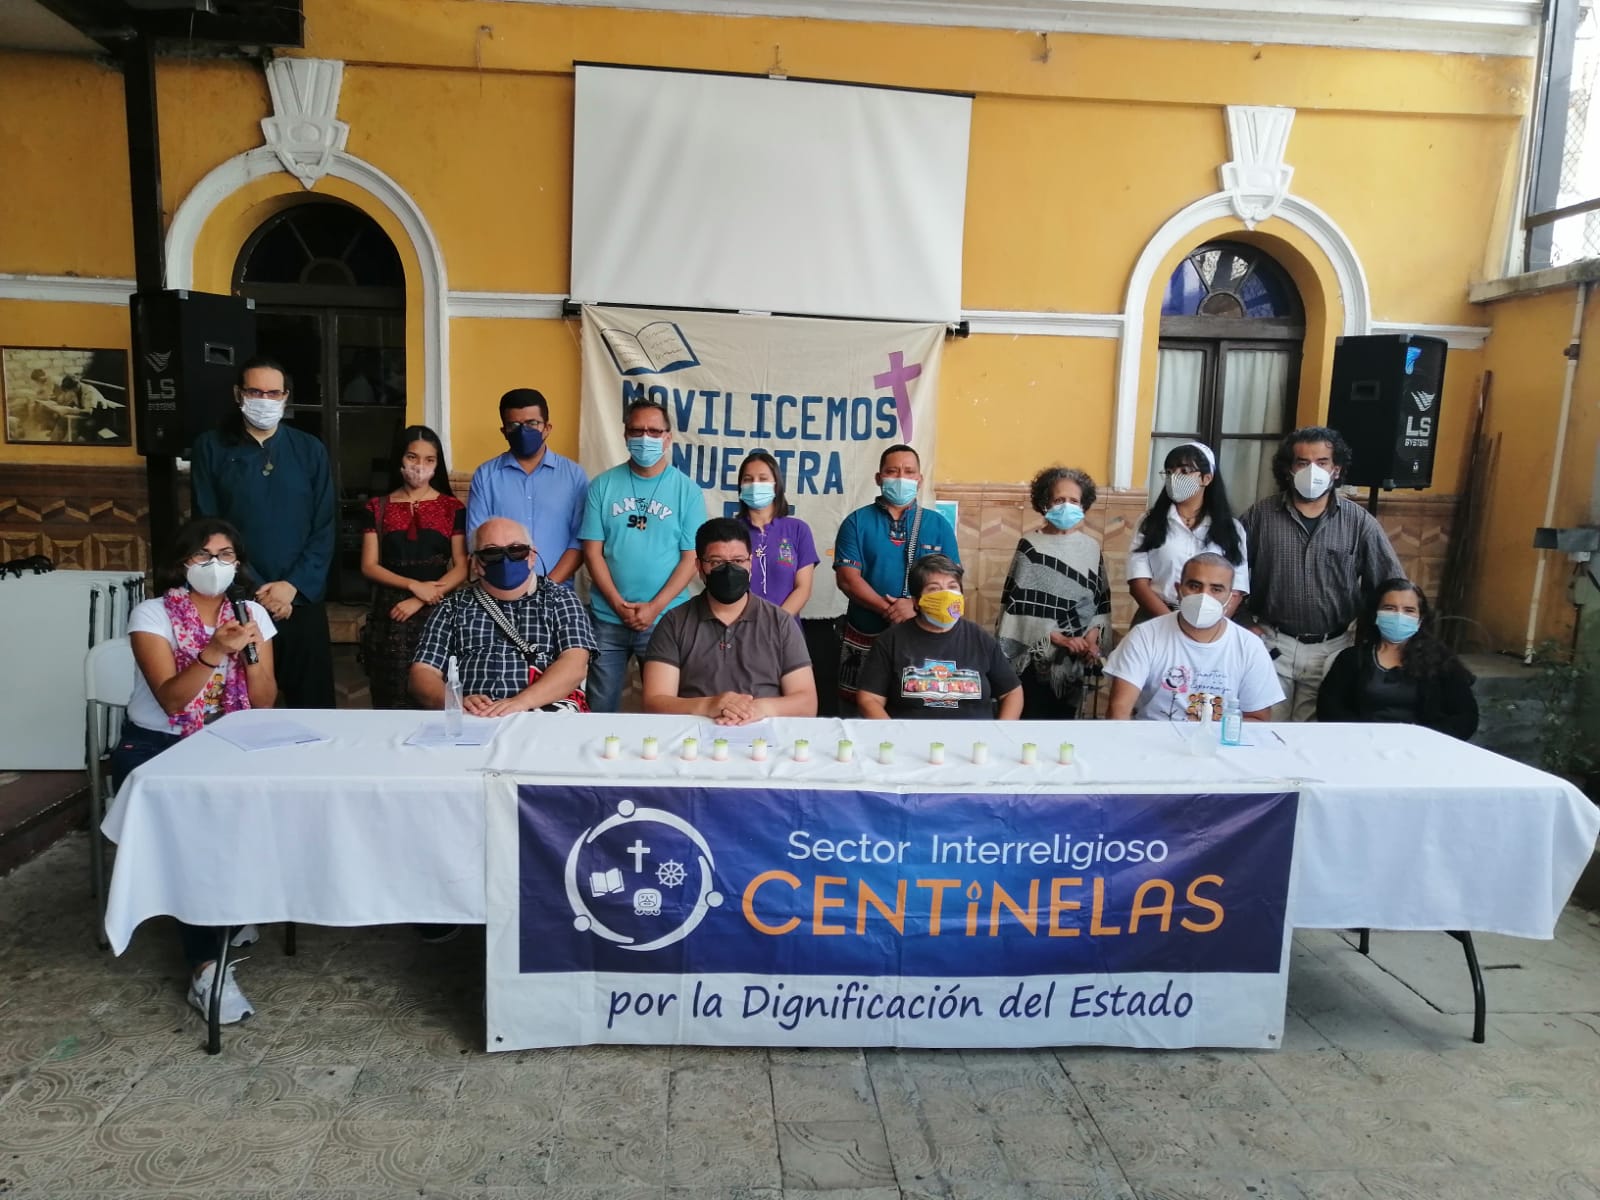 El grupo interreligioso Centinelas denunció que dos de sus miembros han sido criminalizados.  (Foto Prensa Libre: Centinelas)